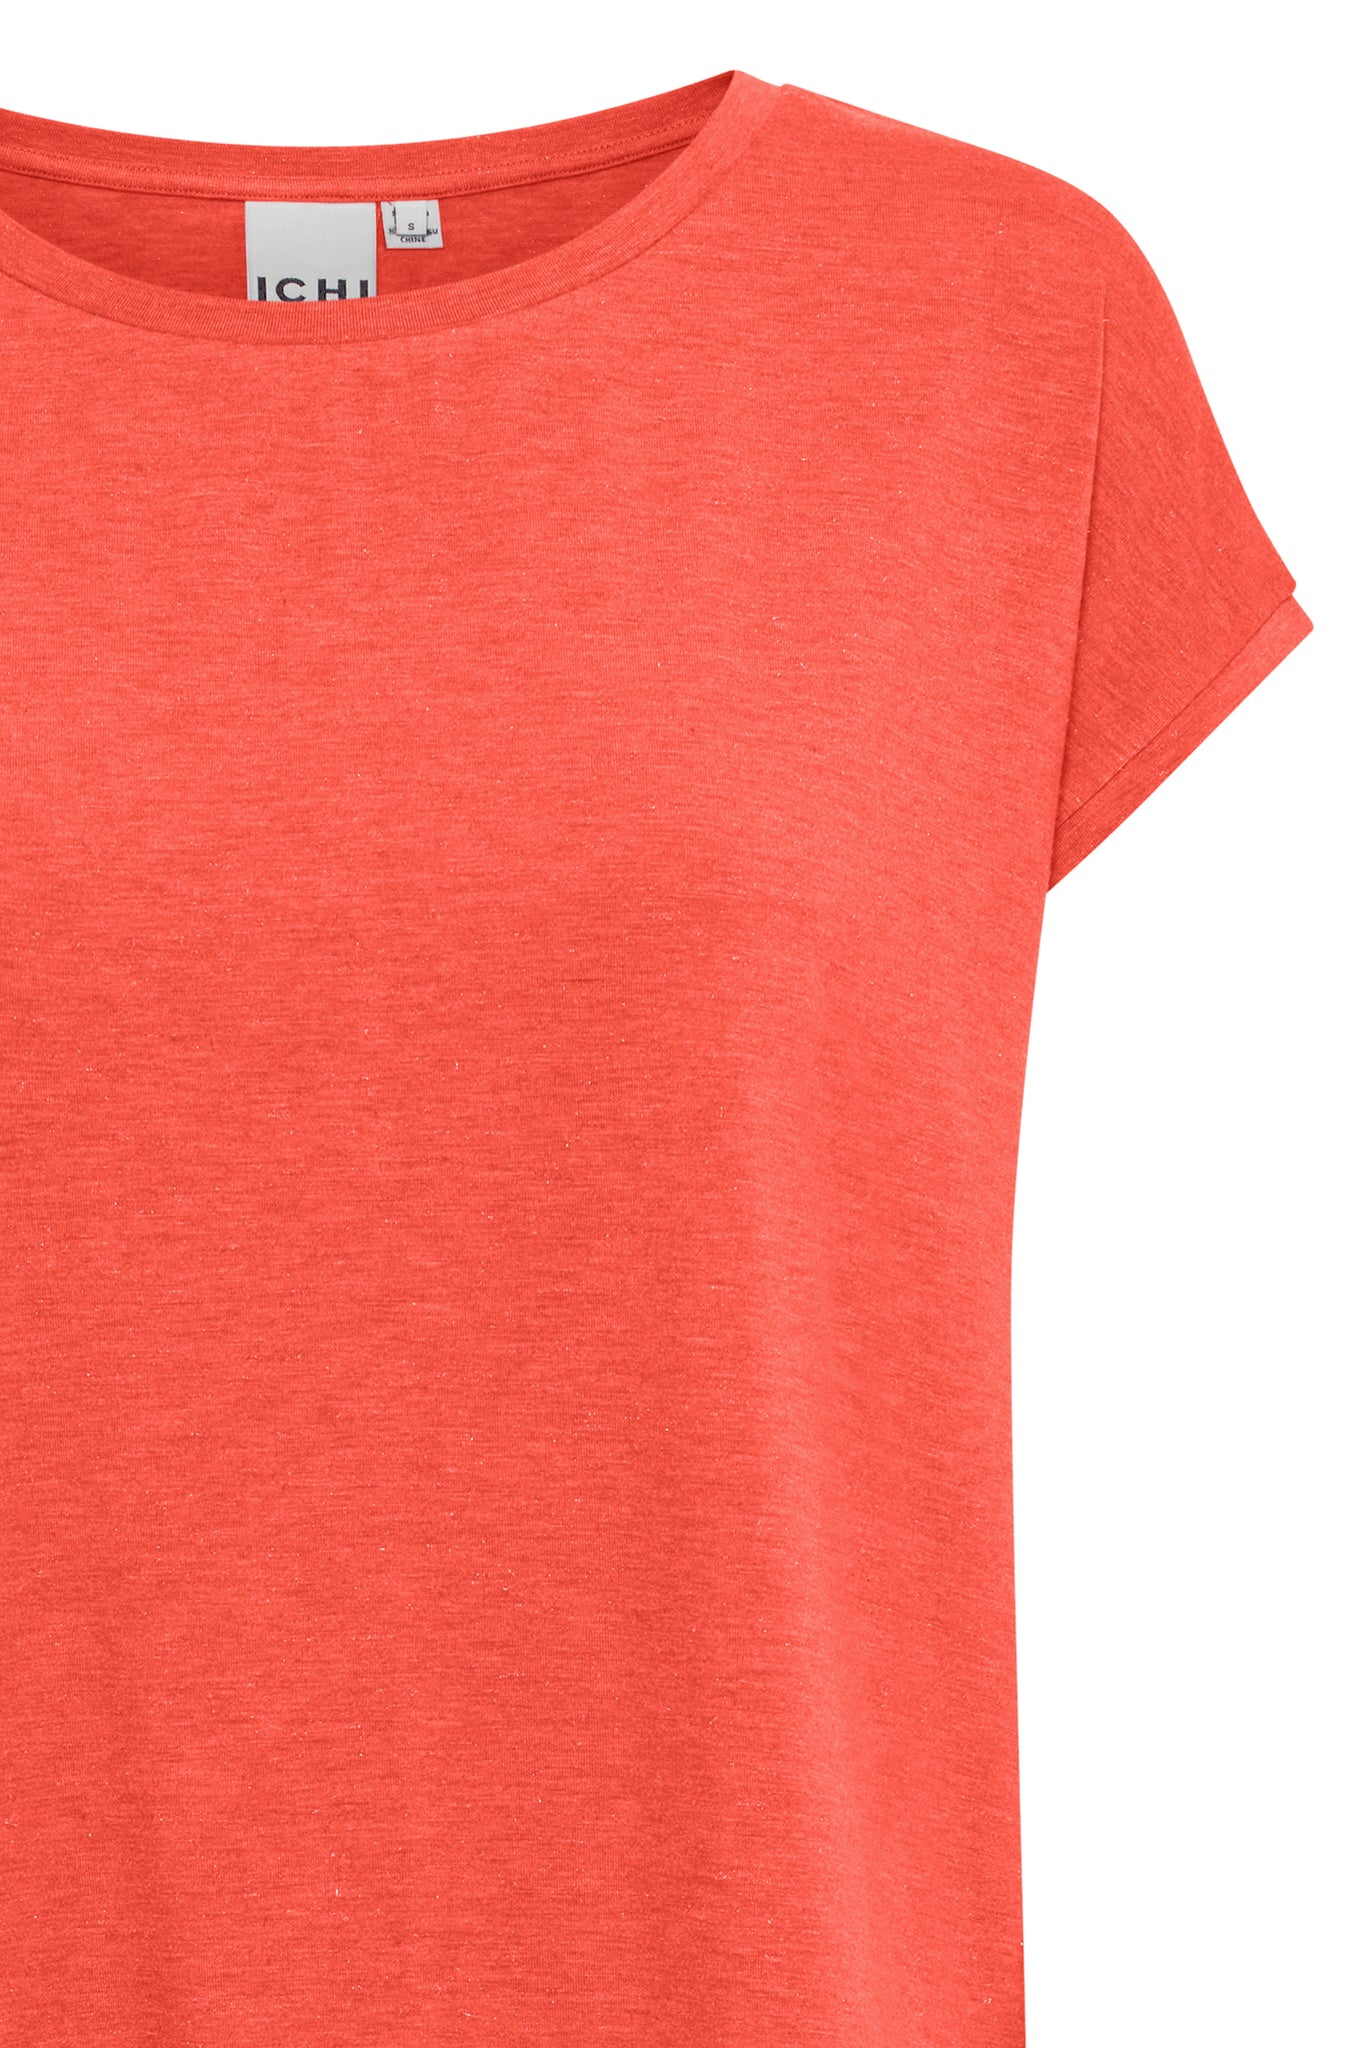 ICHI Rebel Hot Coral T-Shirt